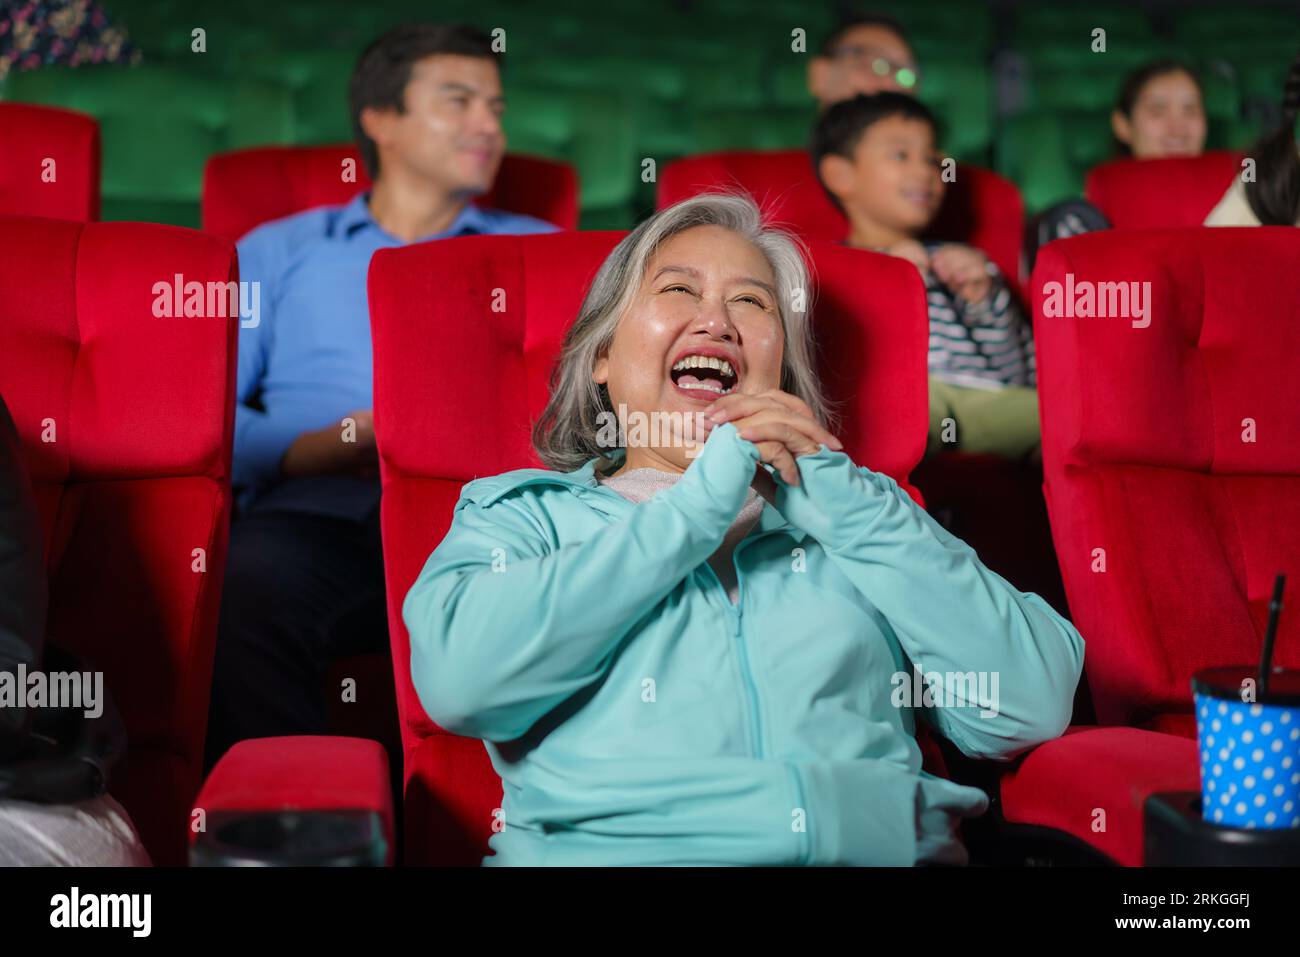 Les femmes âgées asiatiques sont heureuses de regarder des films au cinéma, tenant du pop-corn dans leurs mains. Banque D'Images